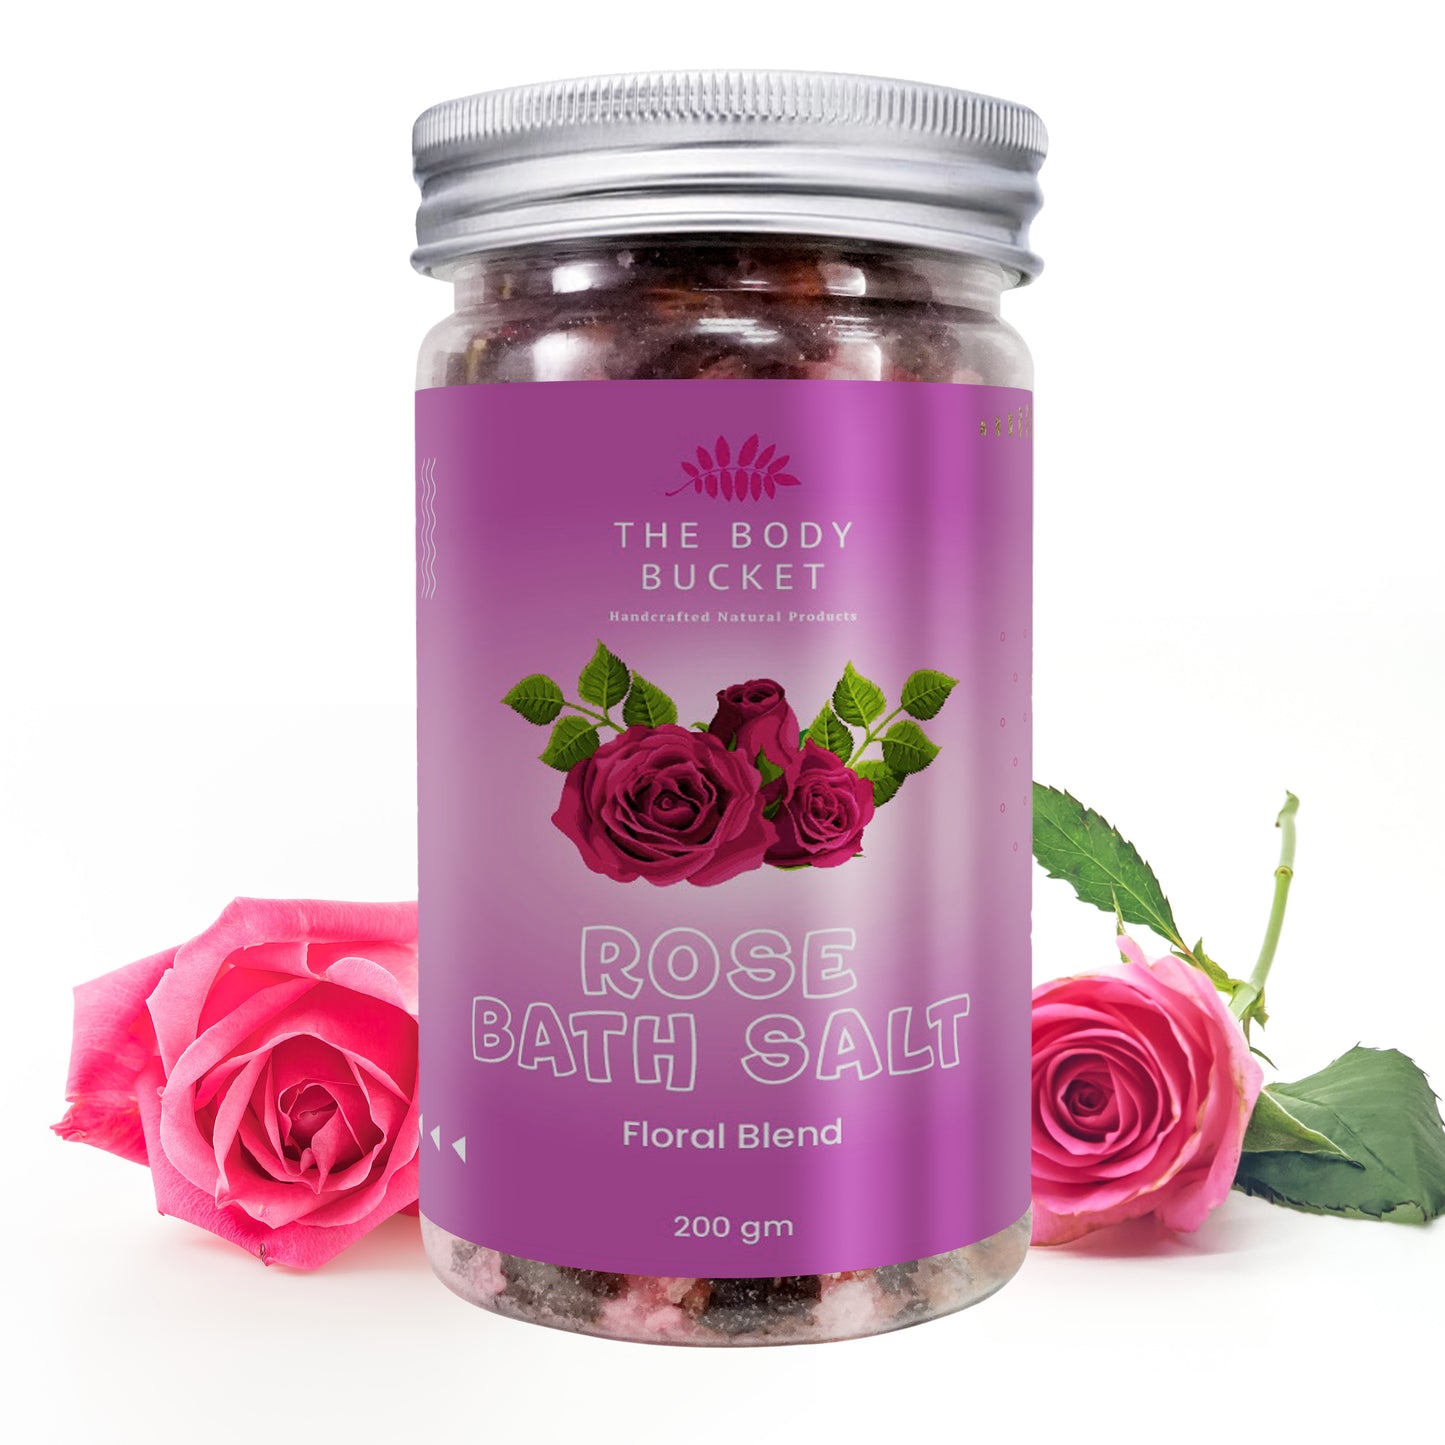 Rose Bath Salt - Floral blend of Rose, Geranium, and Ylang-Ylang Essential Oil -200gms